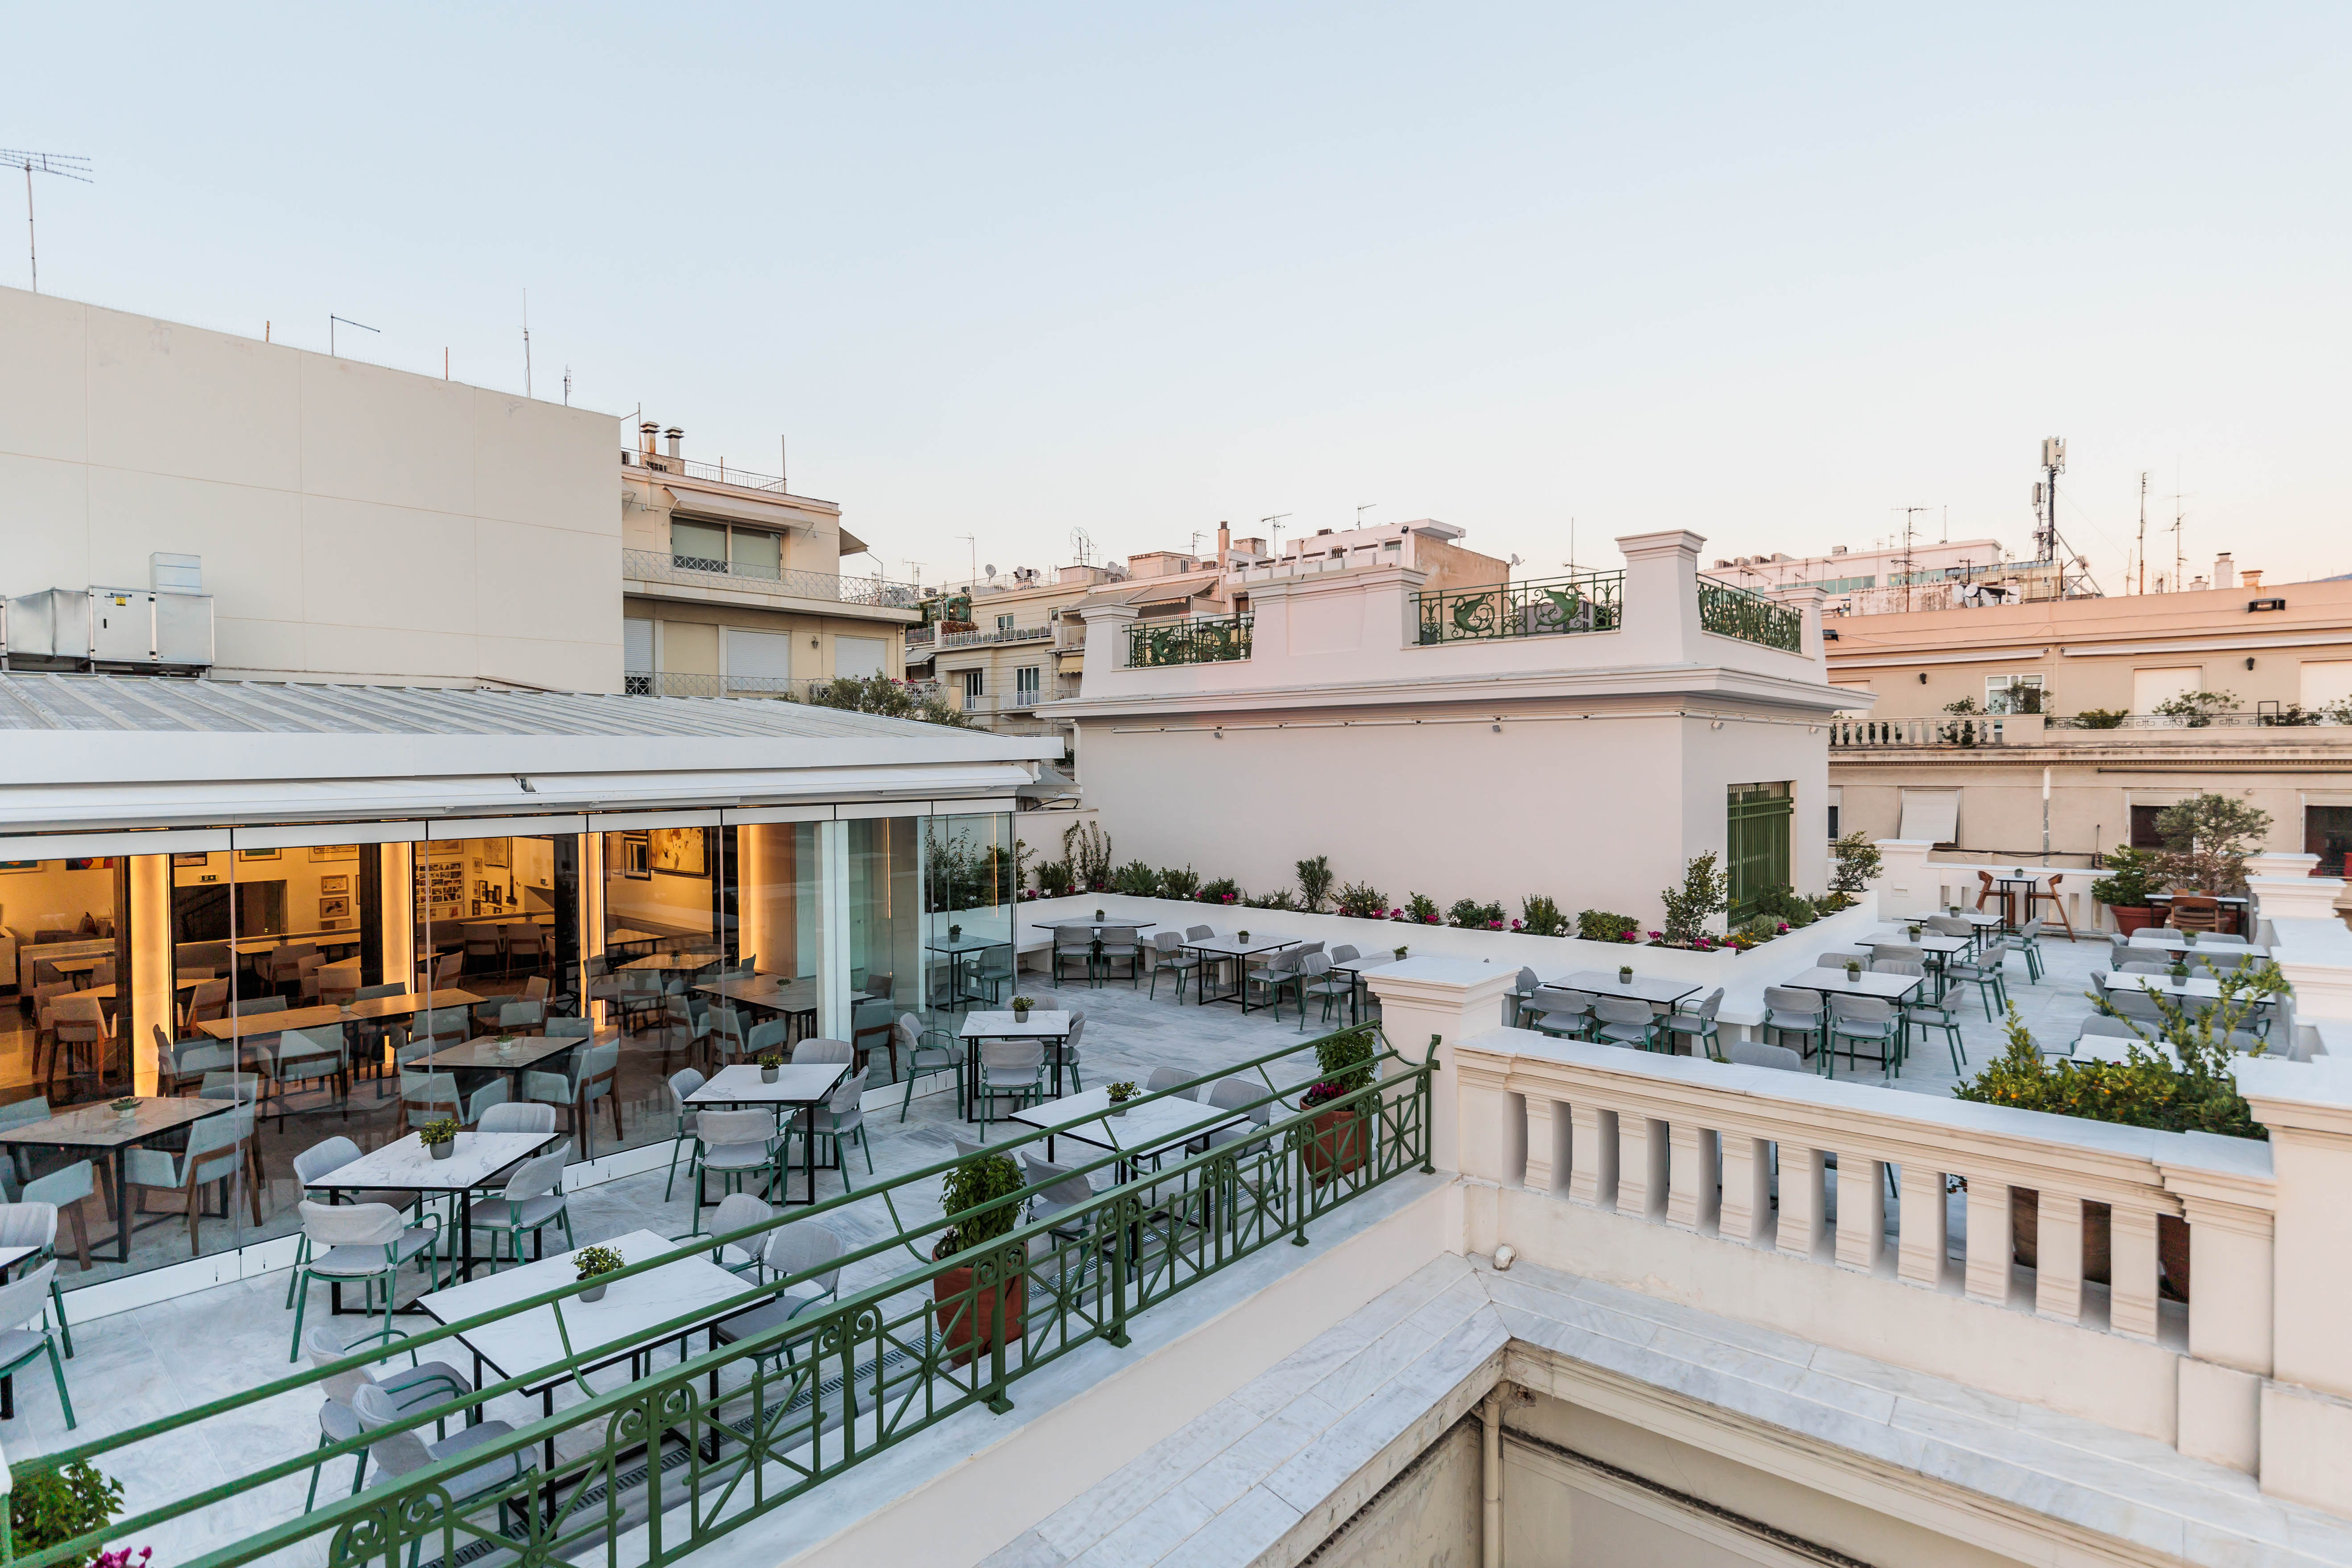 Δειπνοσοφιστήριον: Το εστιατόριο στο Μουσείο Μπενάκη Ελληνικού Πολιτισμού– Ένα Roof Garden στην καρδιά της Αθήνας